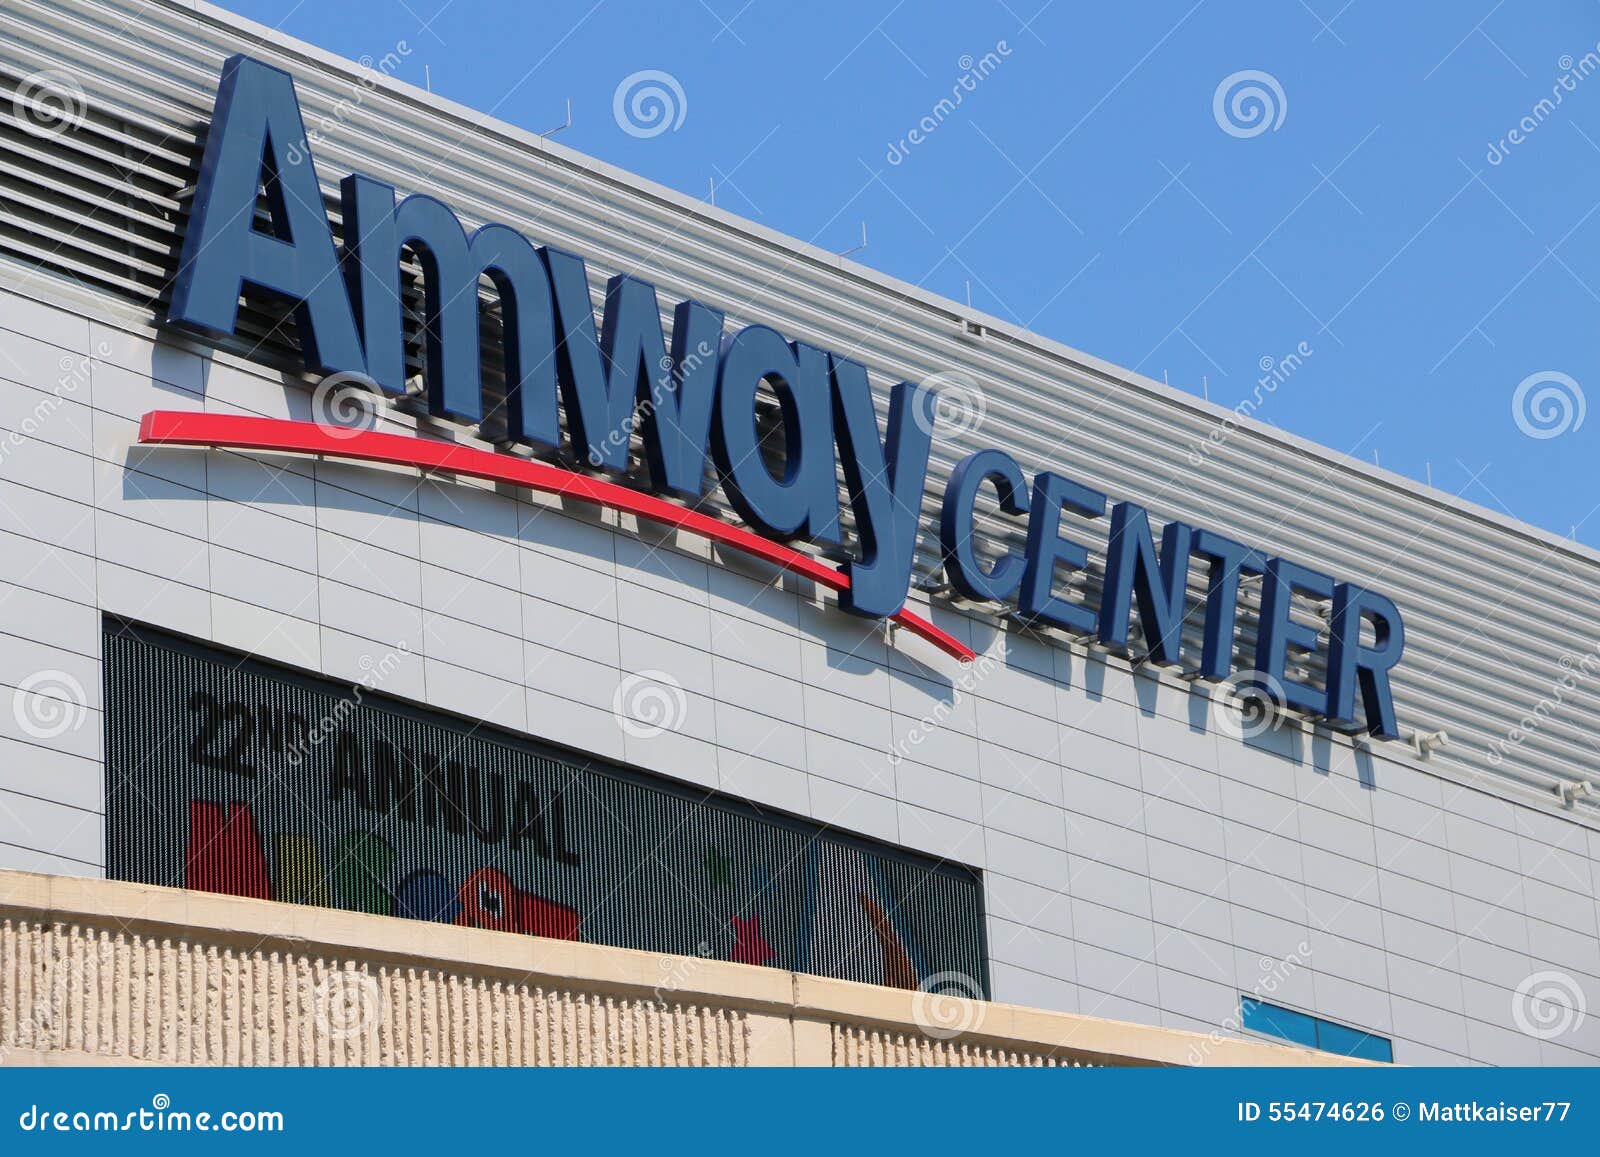 Amway Center Box Office Entrance, cityoforlando